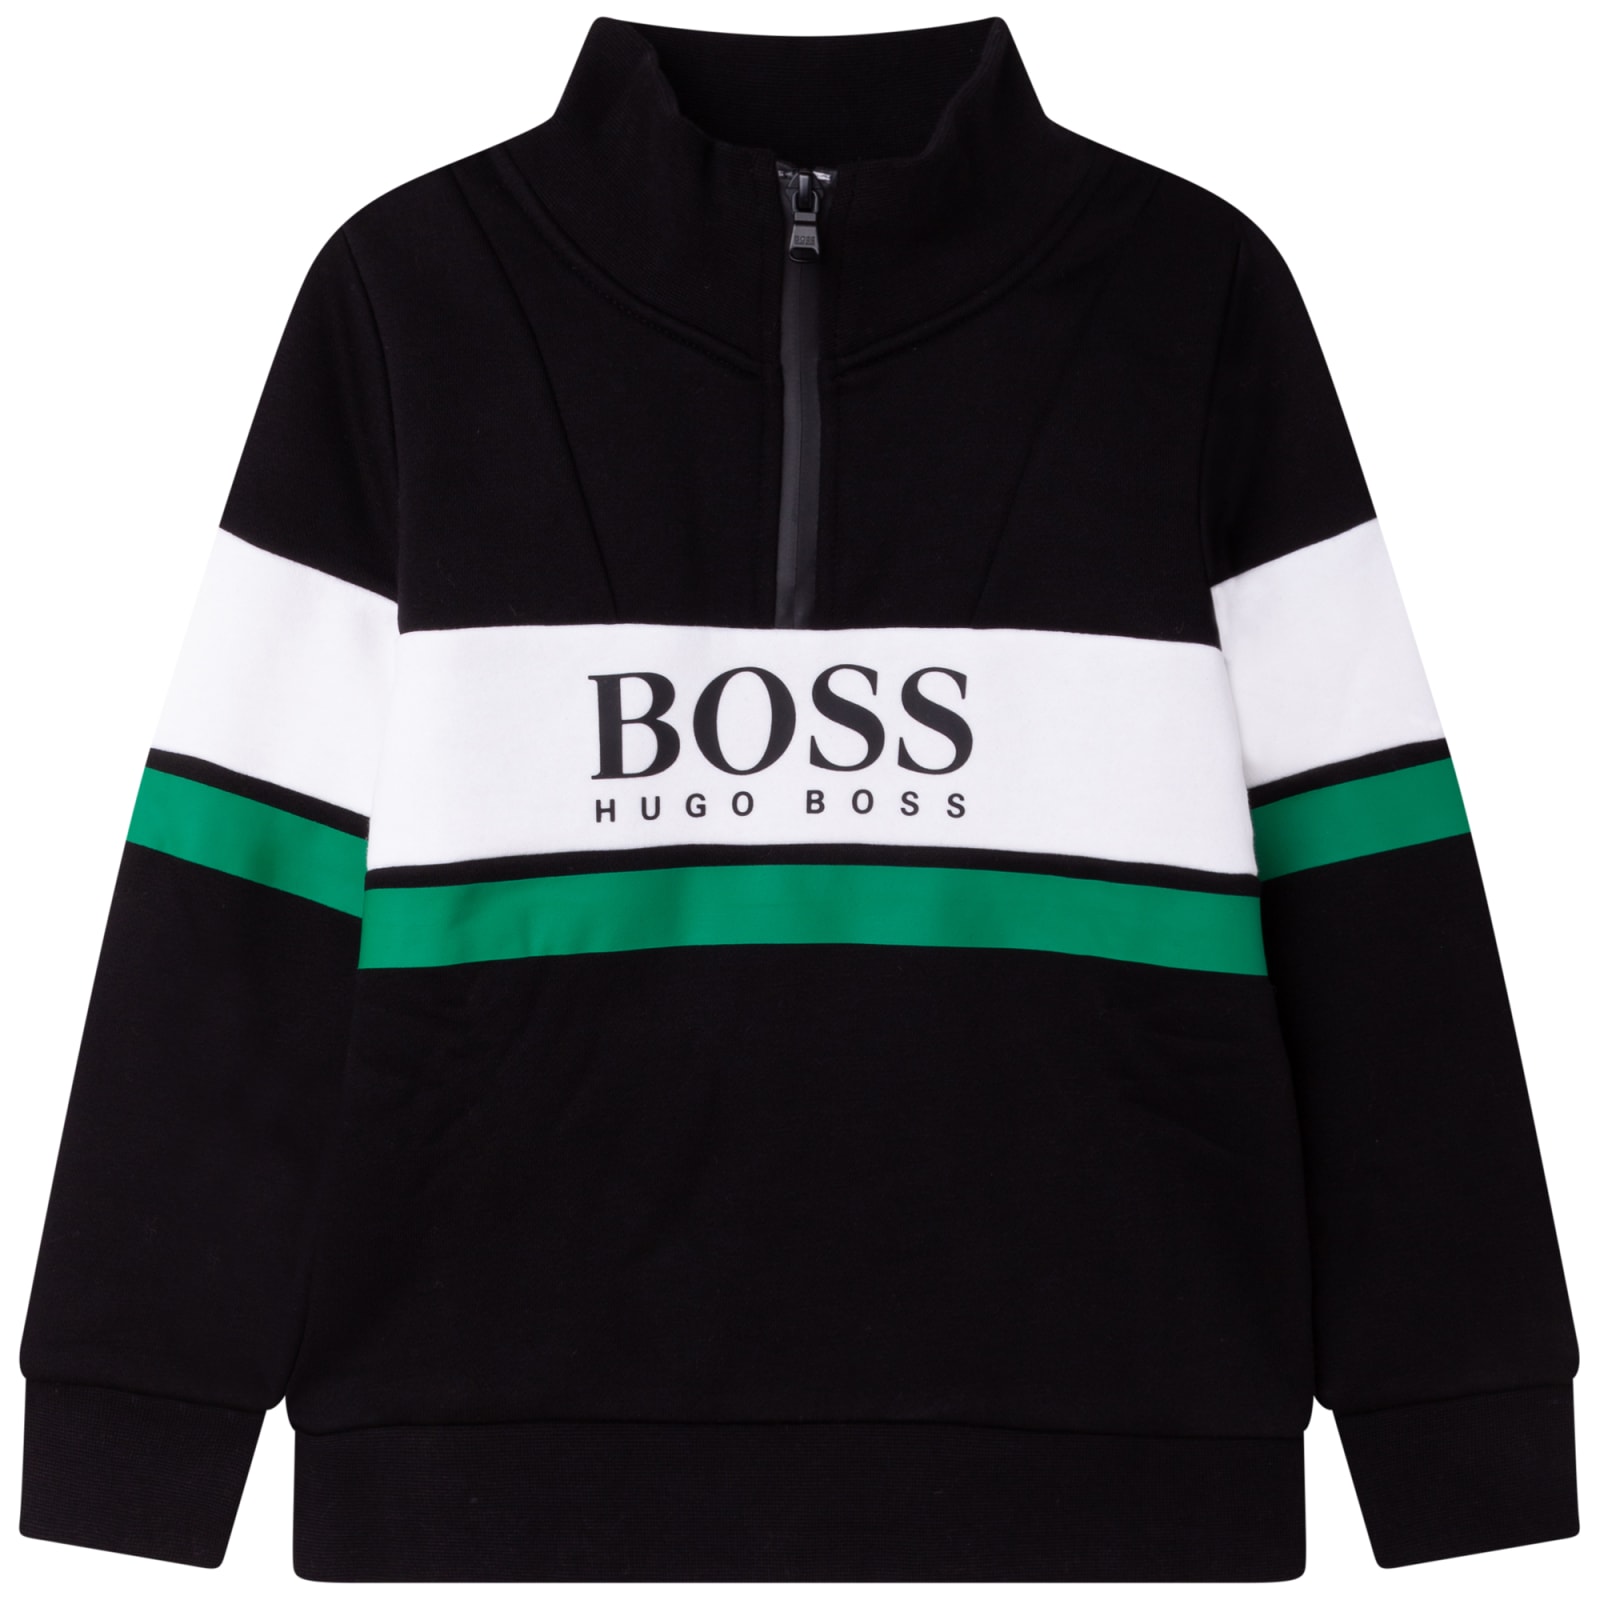 Hugo Boss Sweatshirt With Print